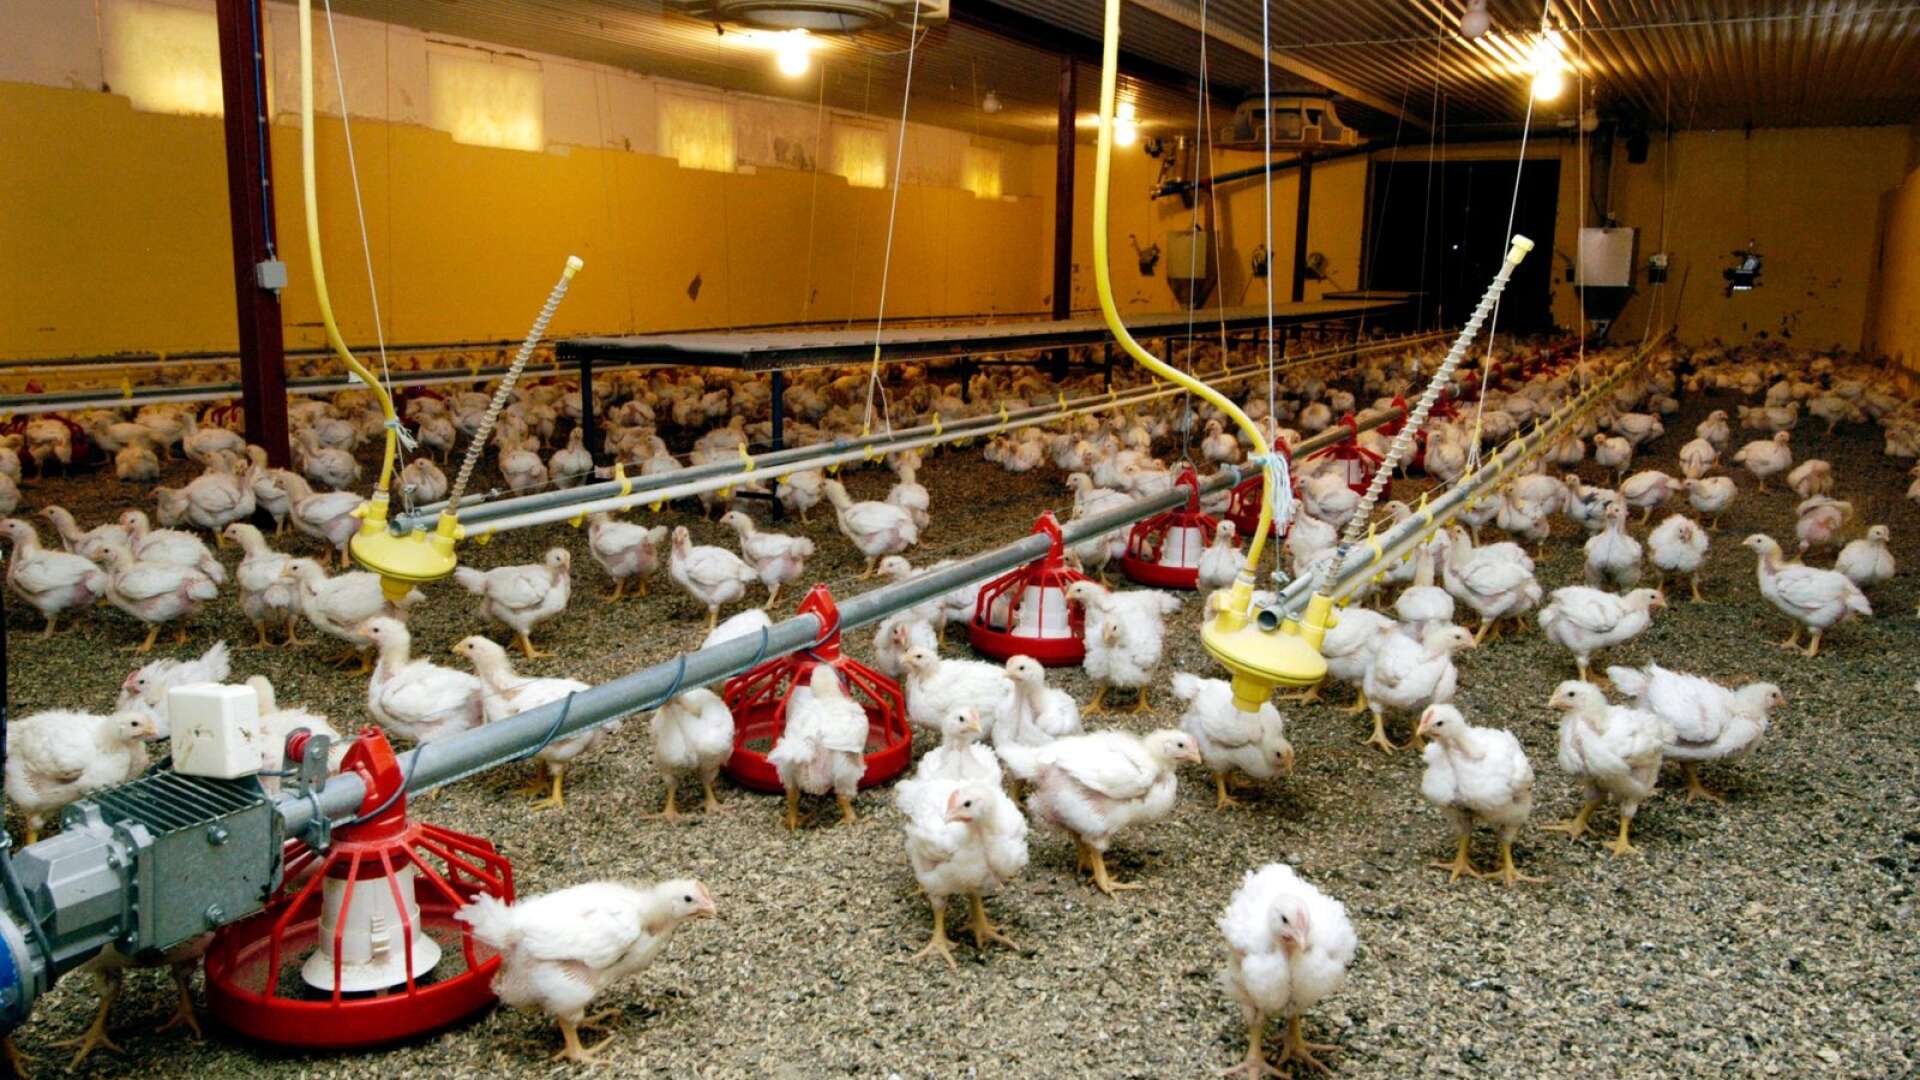 De argument som lyfts fram för kycklingens klimatförträfflighet har ofta varit på gränsen till bedrägligt utformade halvsanningar, skriver Per-Ola Olsson.